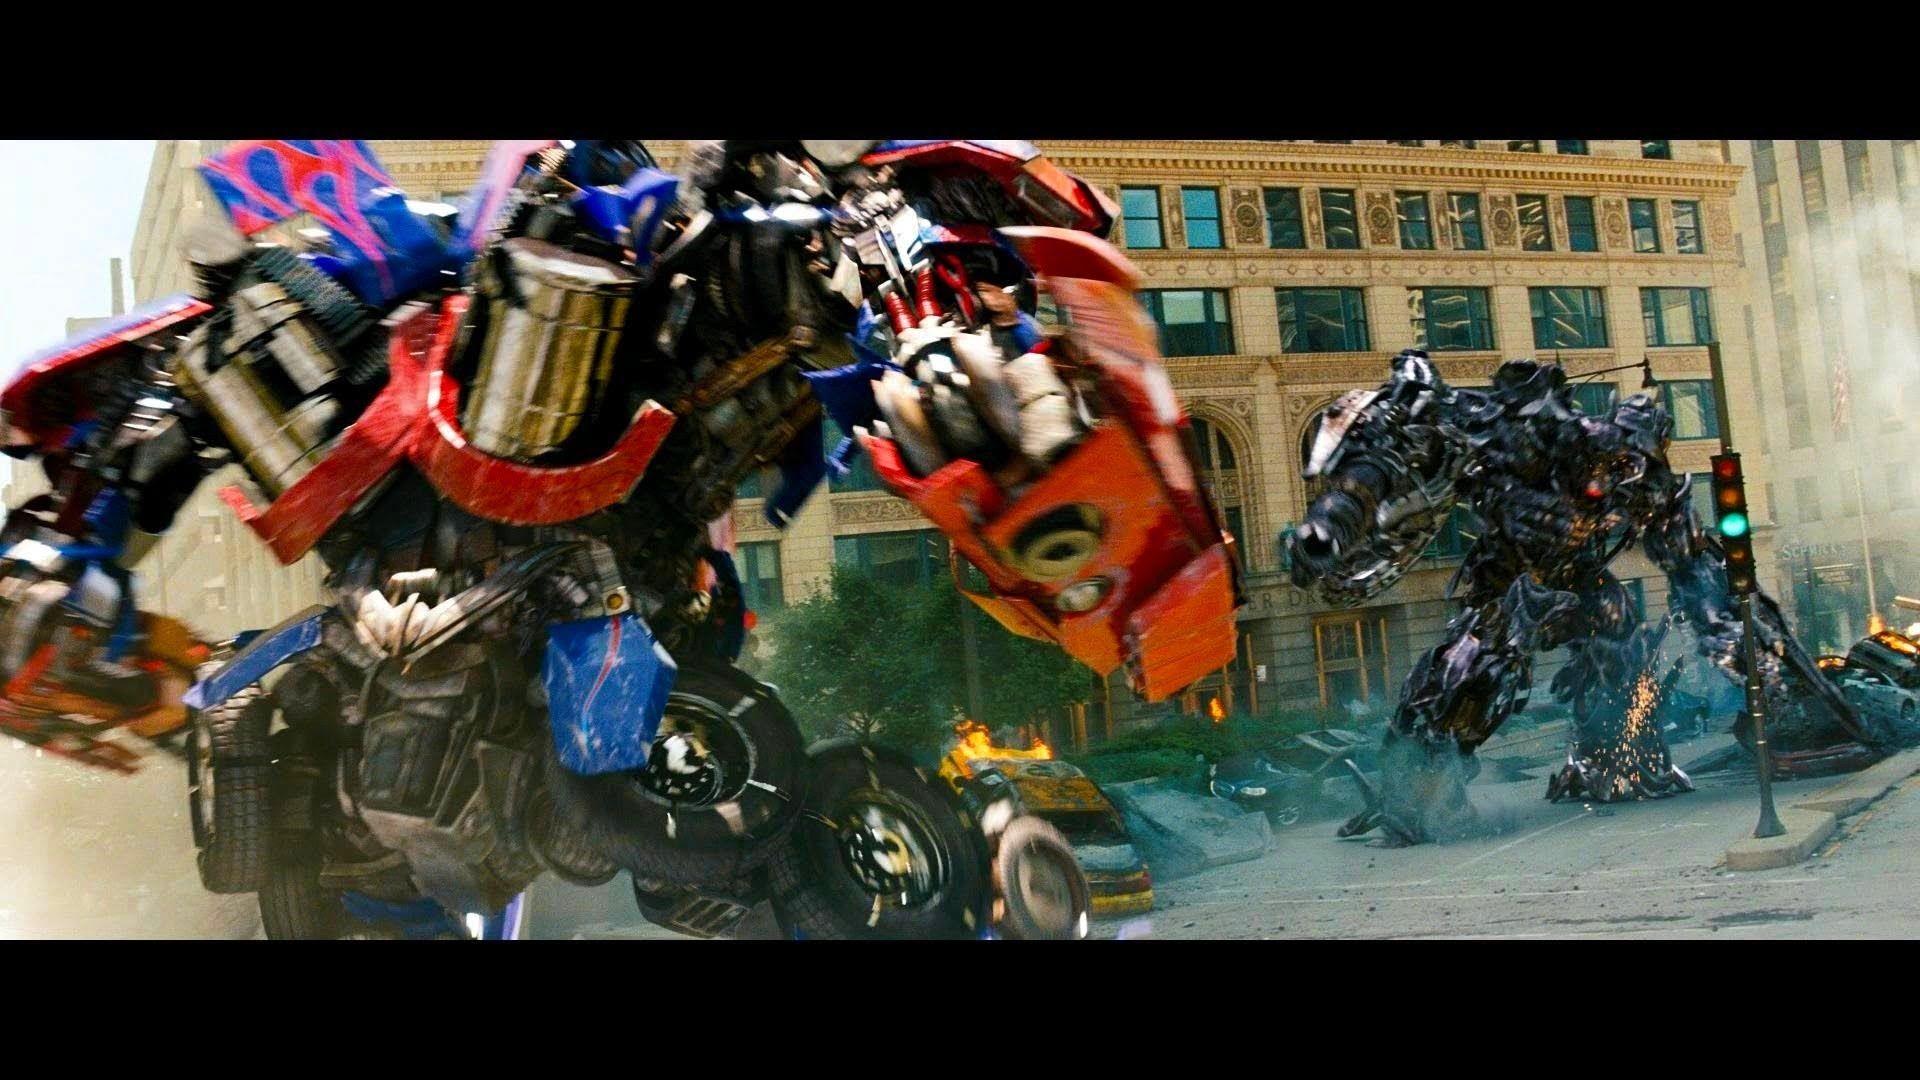 Transformers dark of the moon Optimus prime vs Shockwave 1080pHD VO